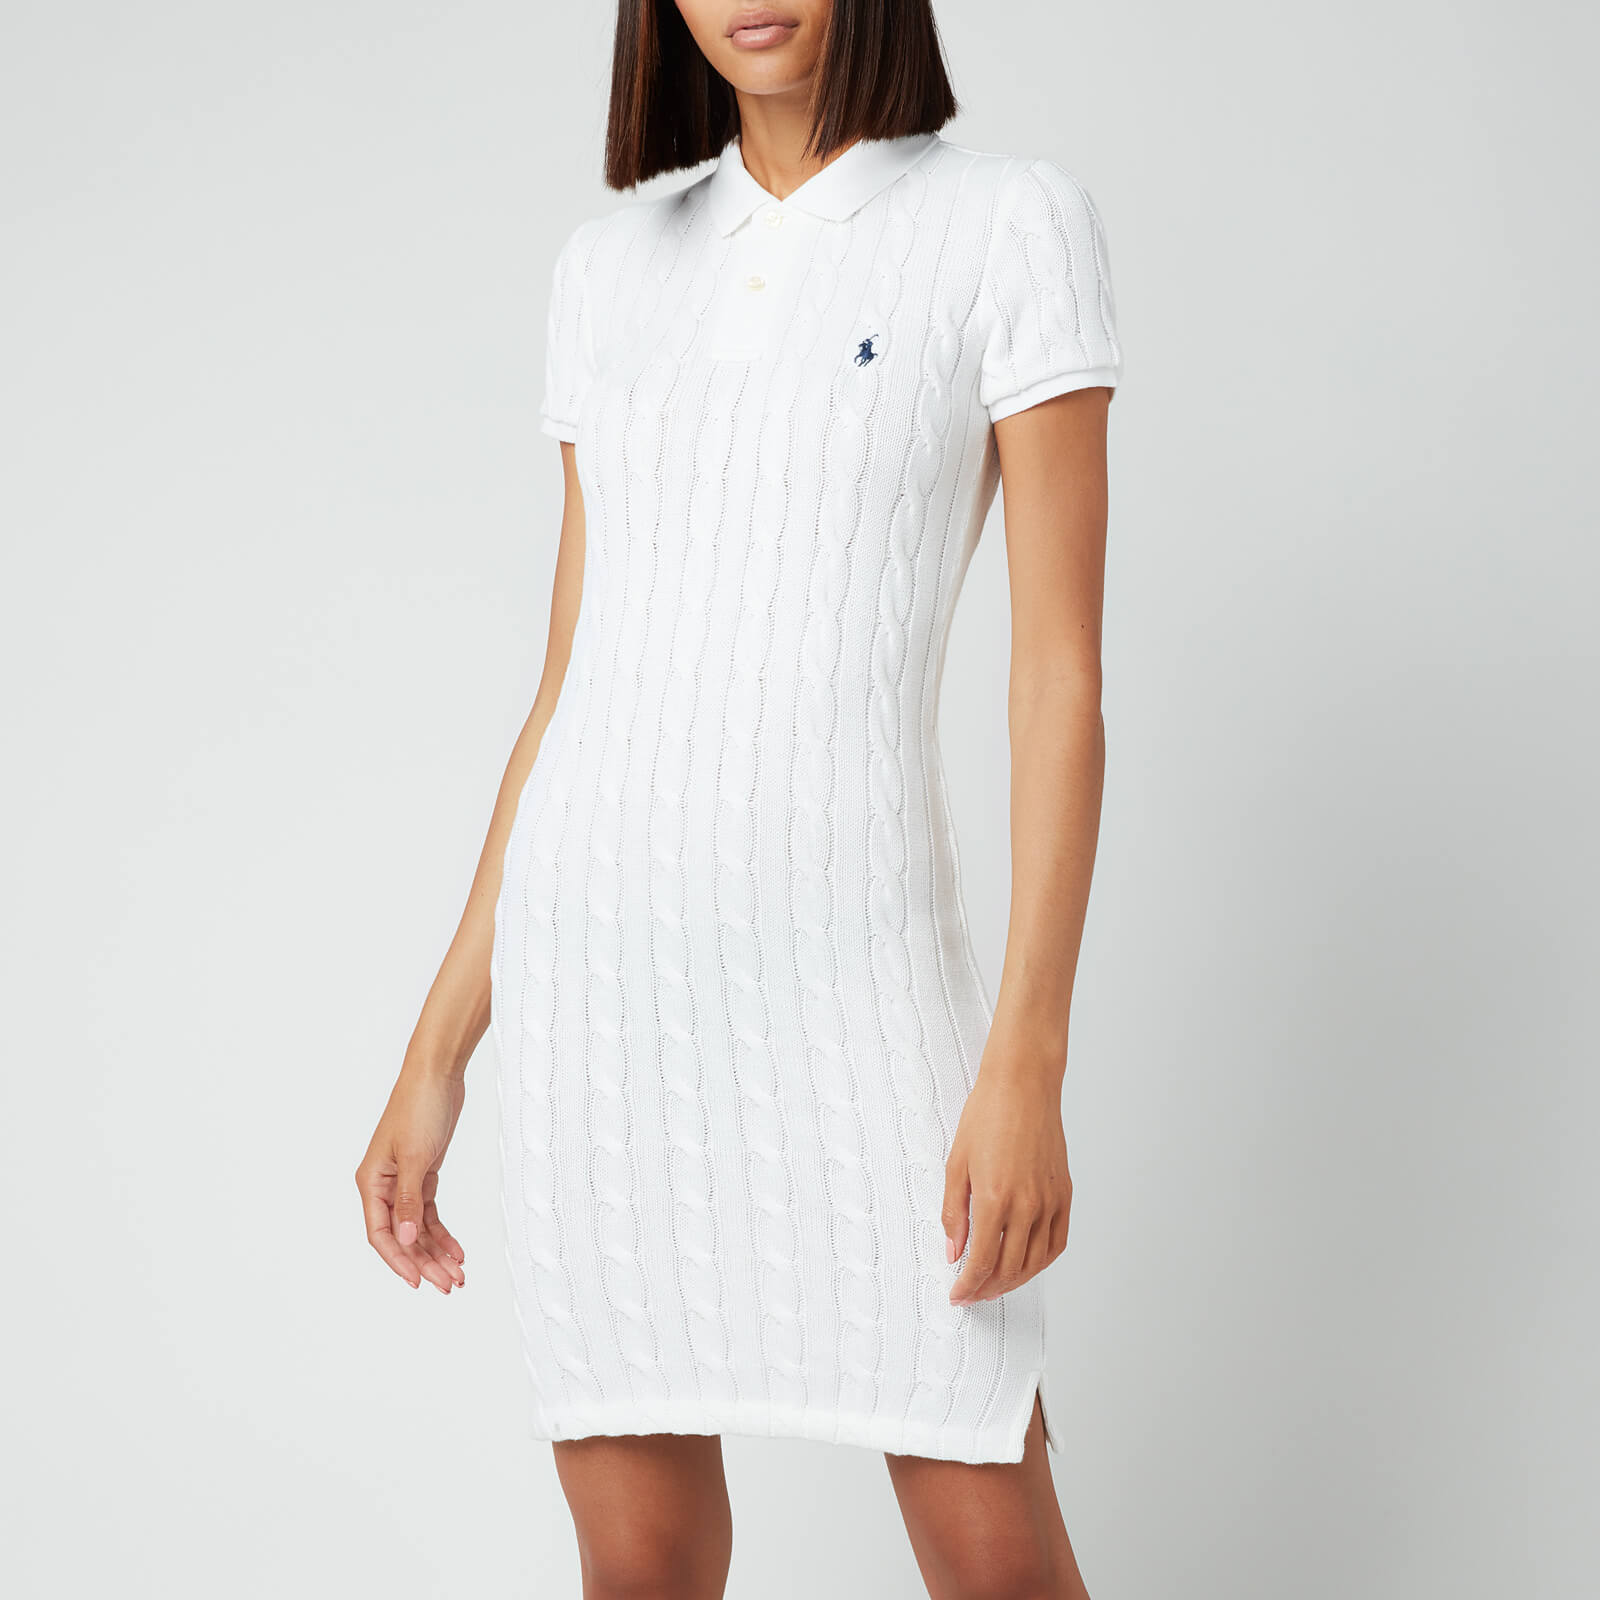 Polo Ralph Lauren Women's Polo T-Shirt Midi Dress - White - XS